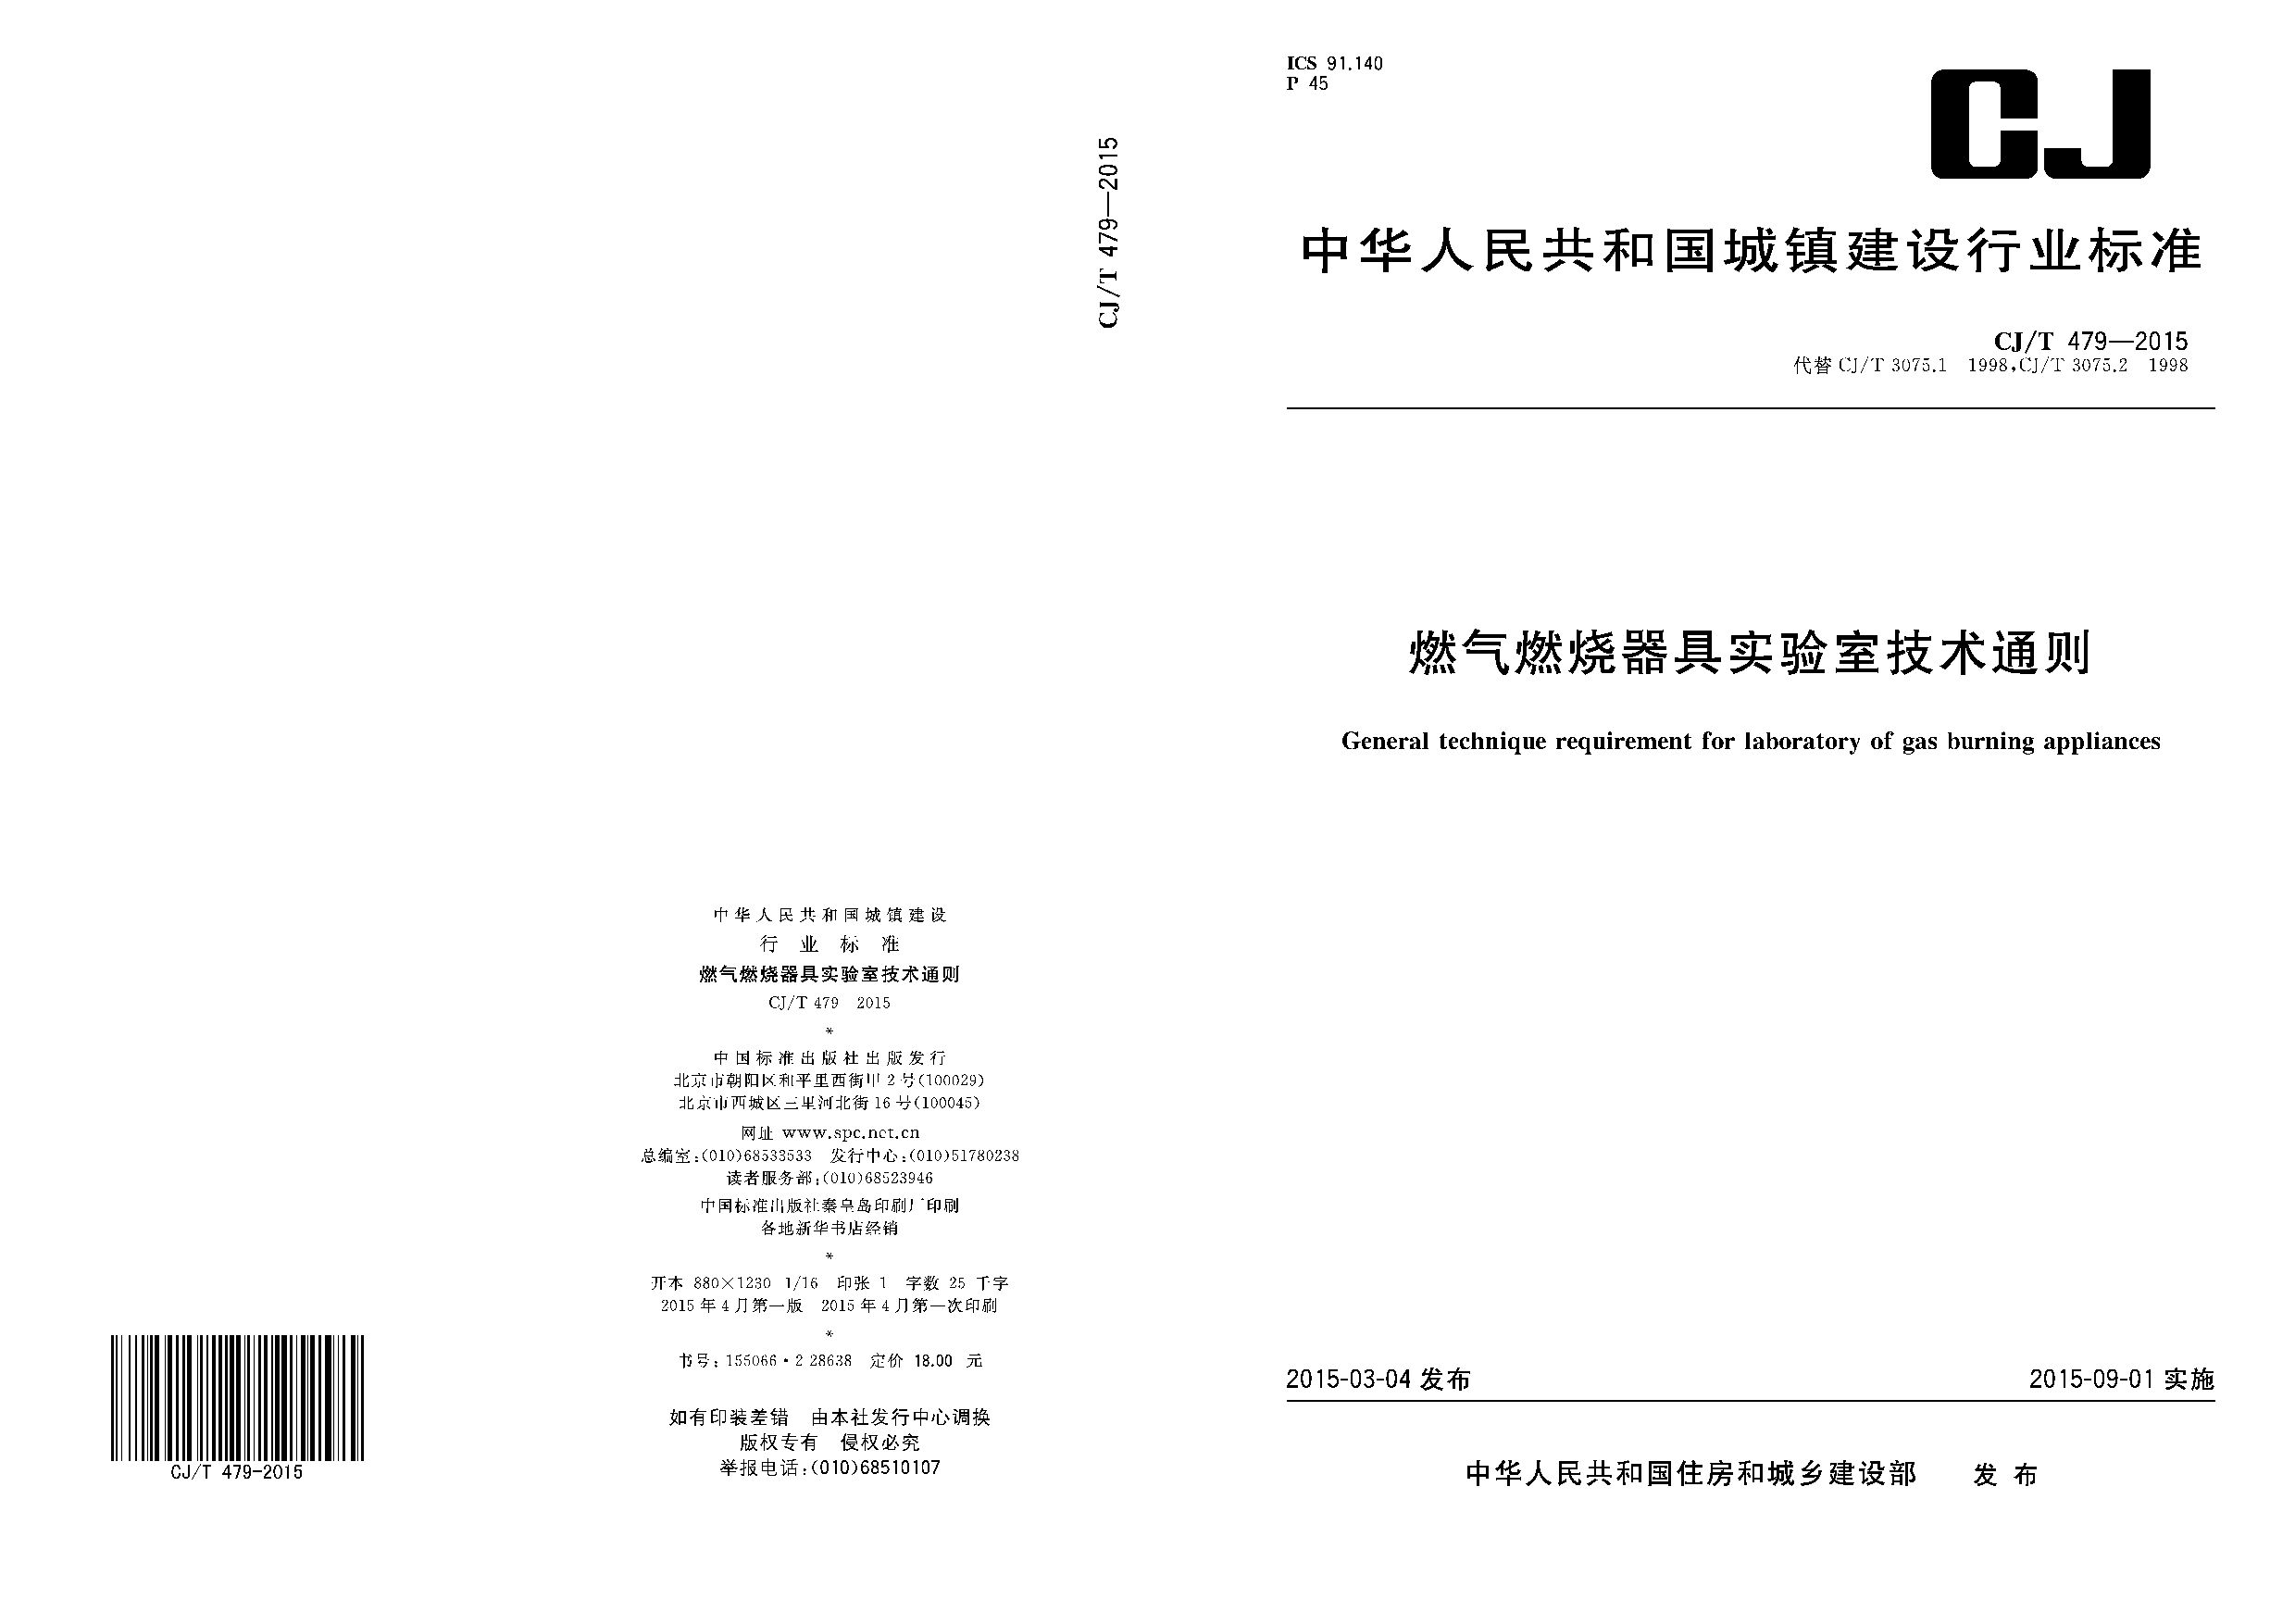 CJ/T 479-2015封面图